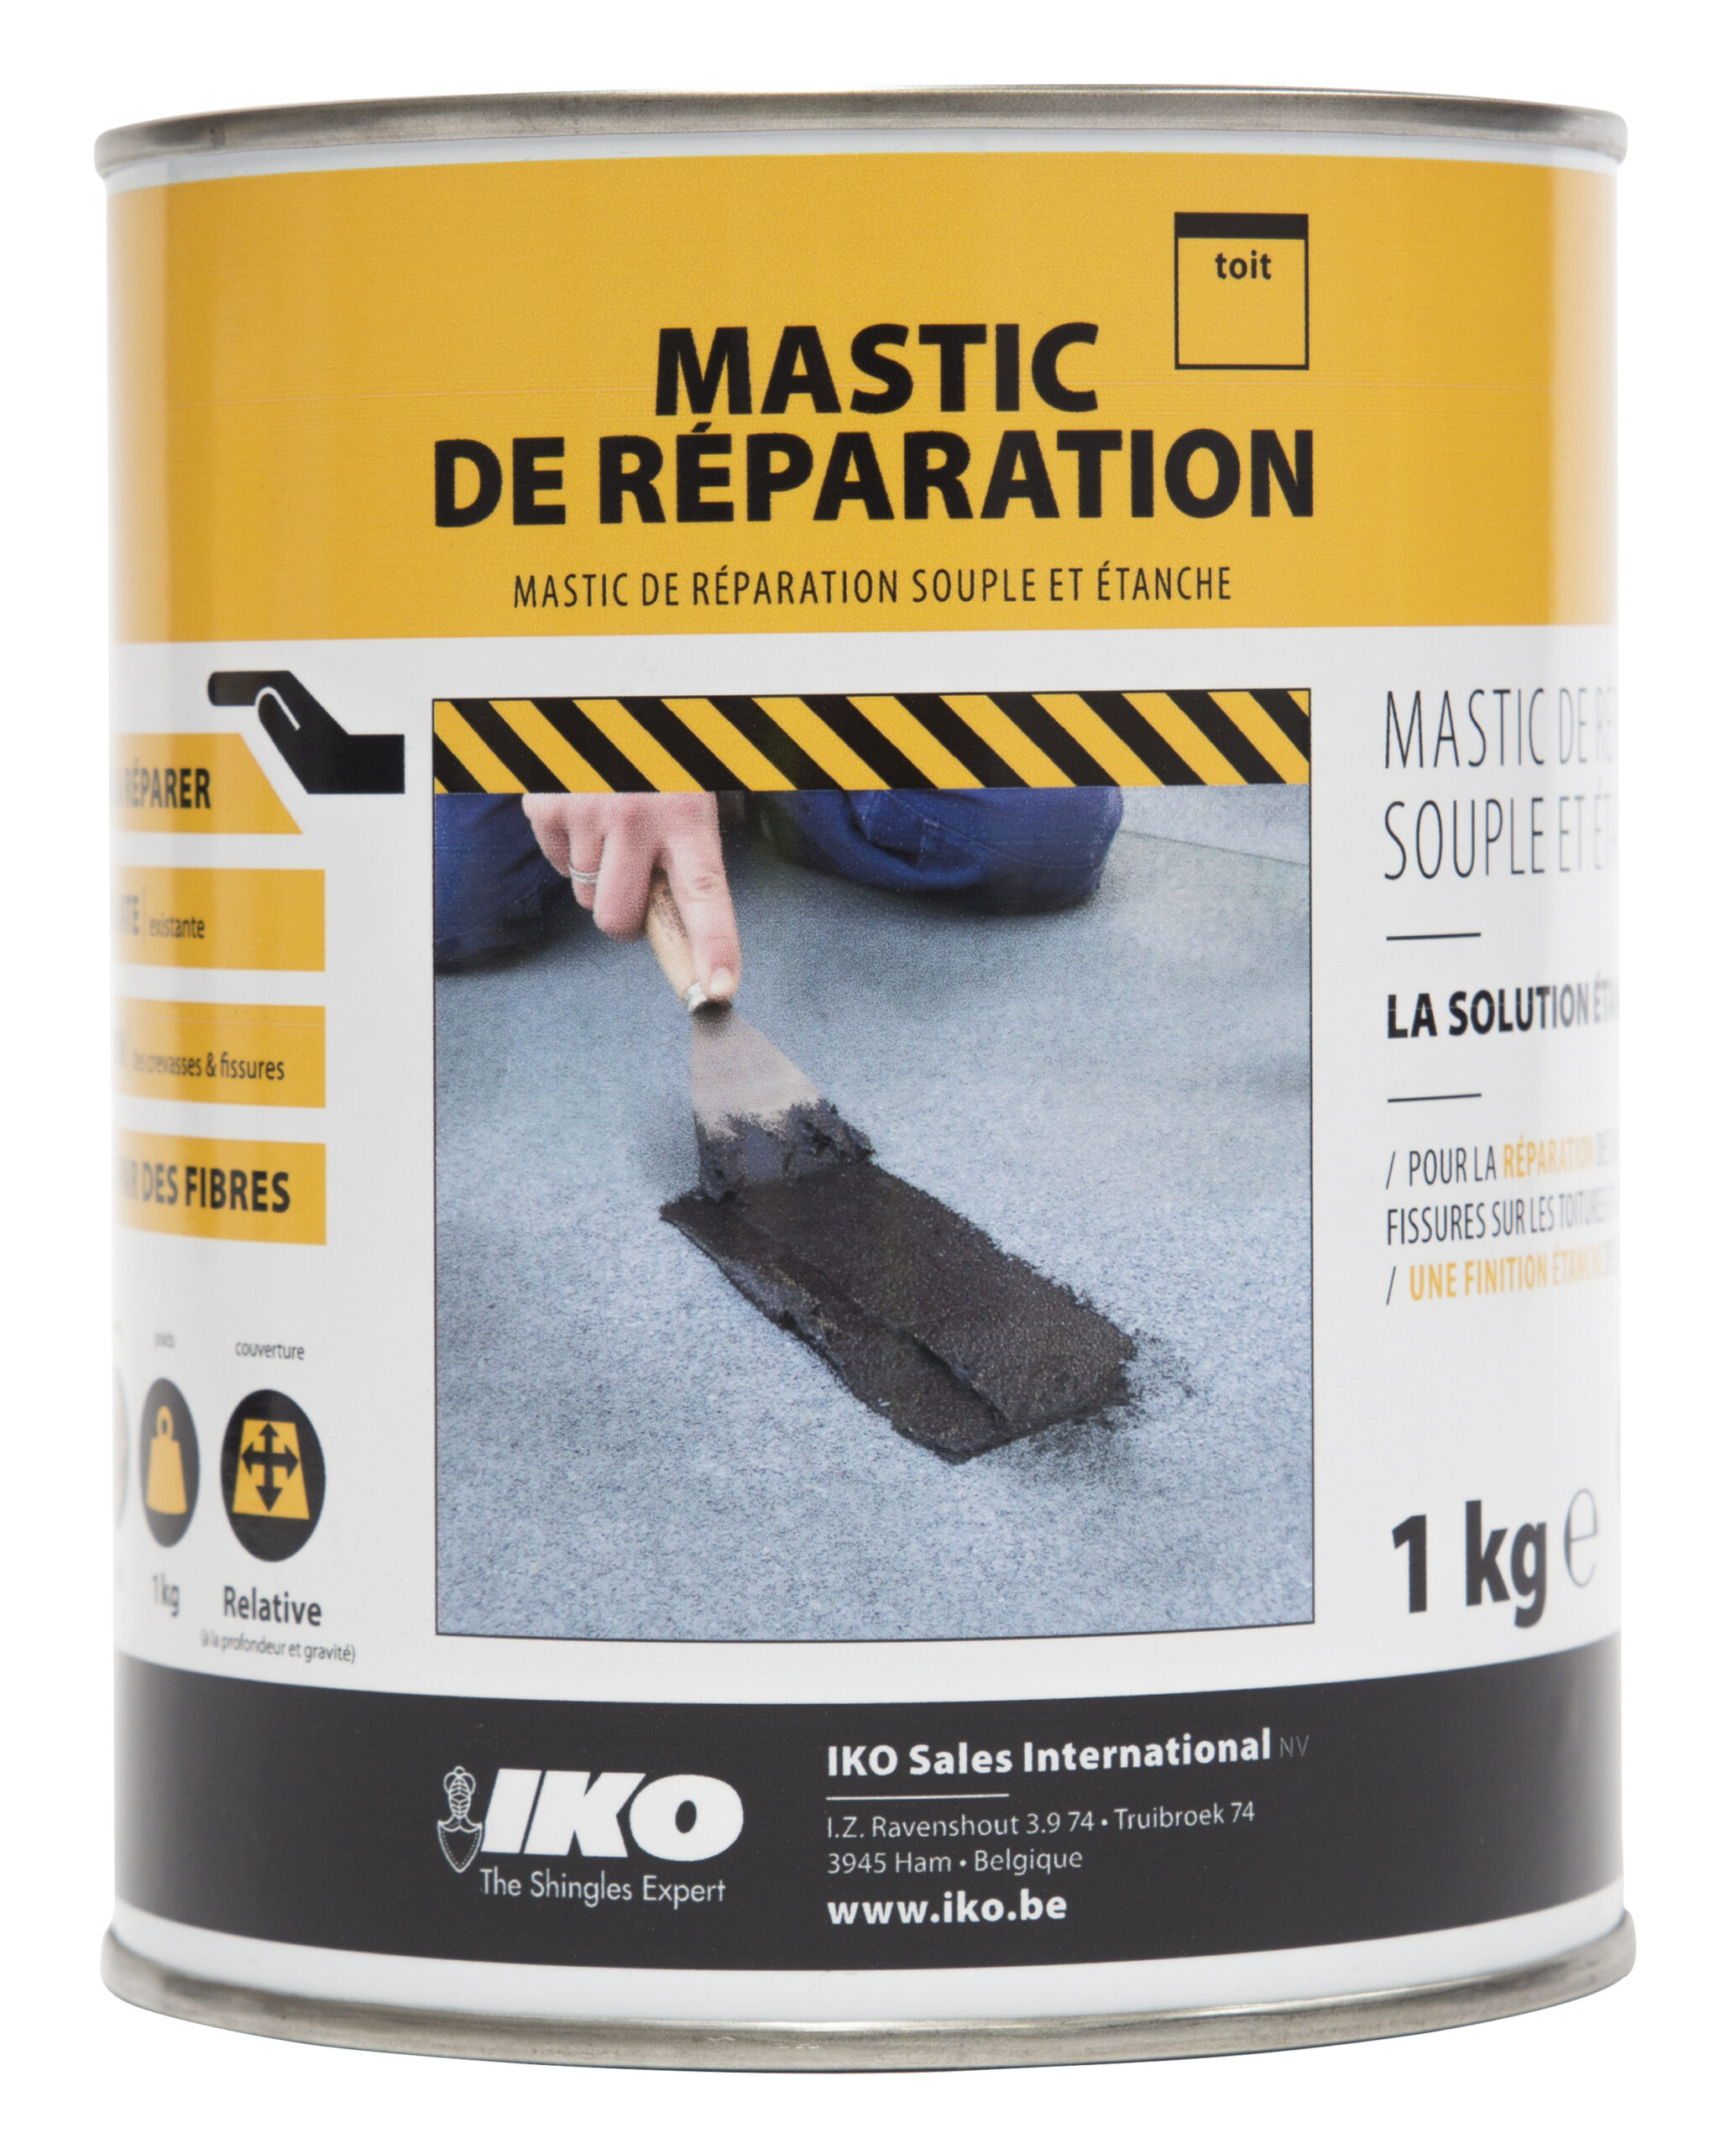 Mastic de réparation Easy-Protect noir pour réparation toiture